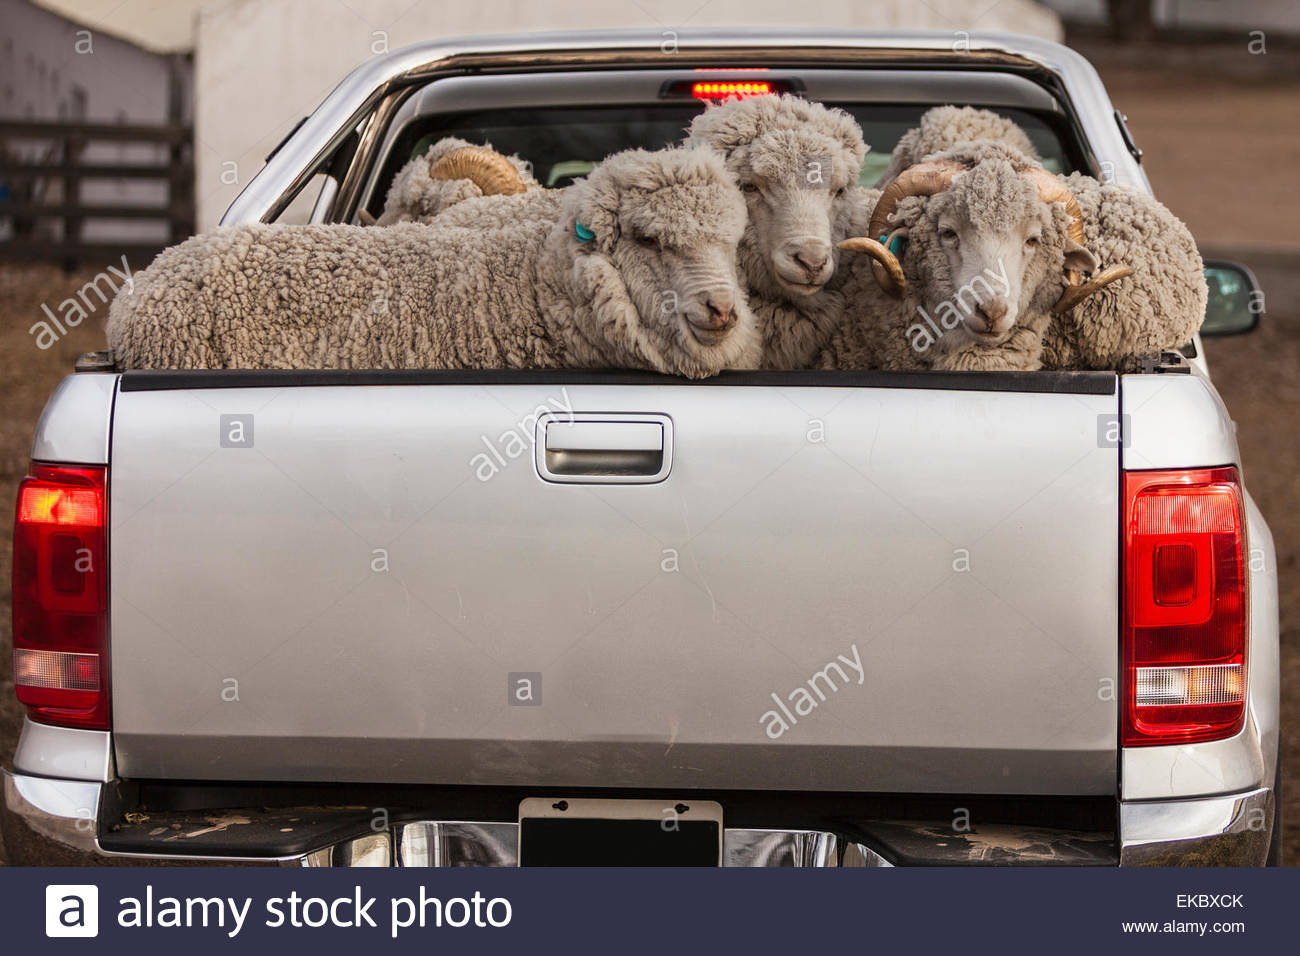 pickup-truck-taking-sheep-to-shearing-shed-estancia-mata-grande-santa-EKBXCK.jpg